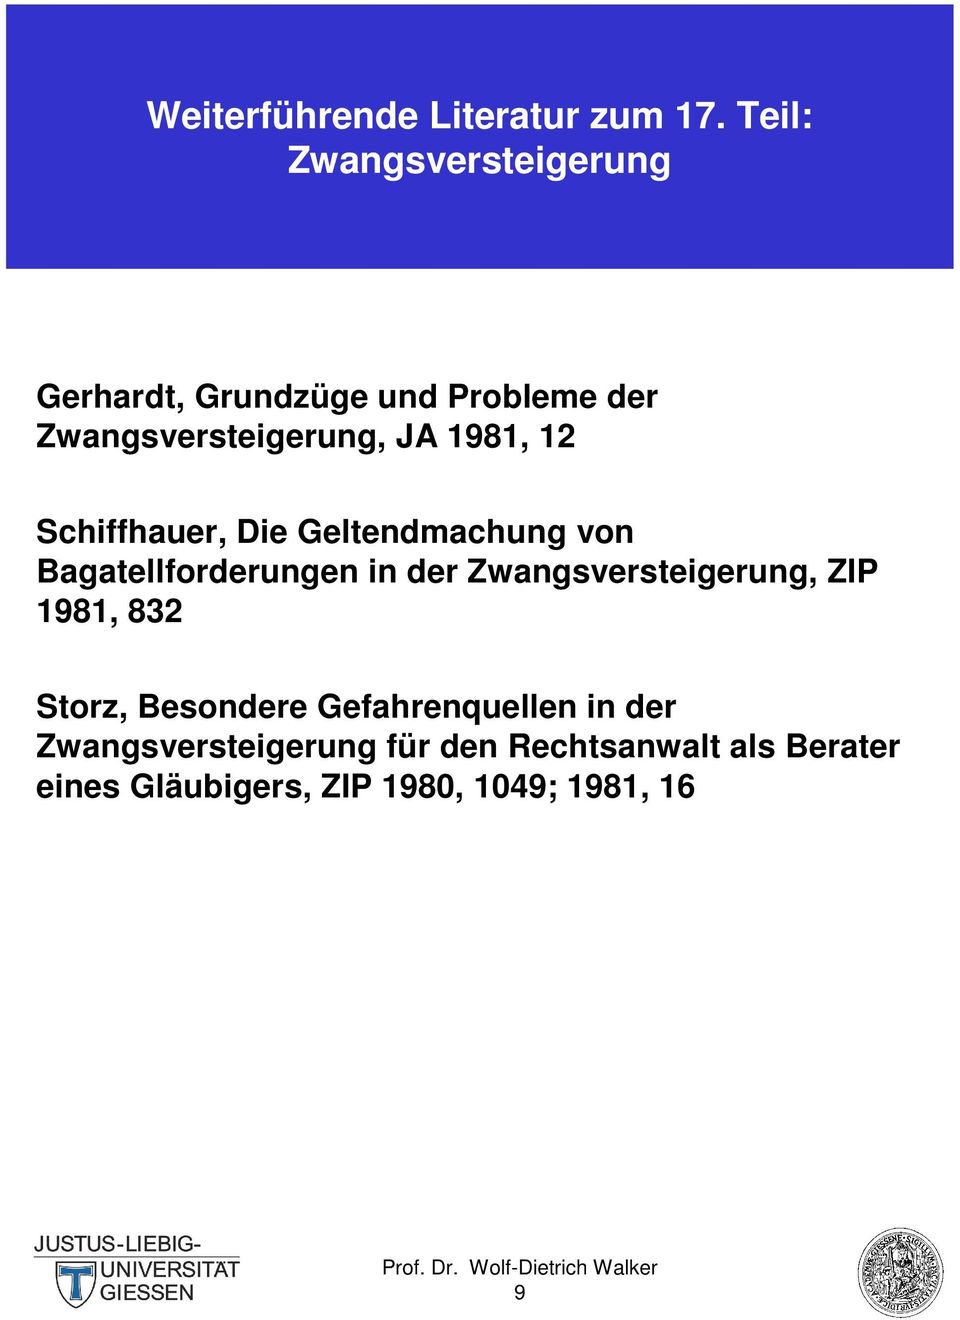 1981, 12 Schiffhauer, Die Geltendmachung von Bagatellforderungen in der